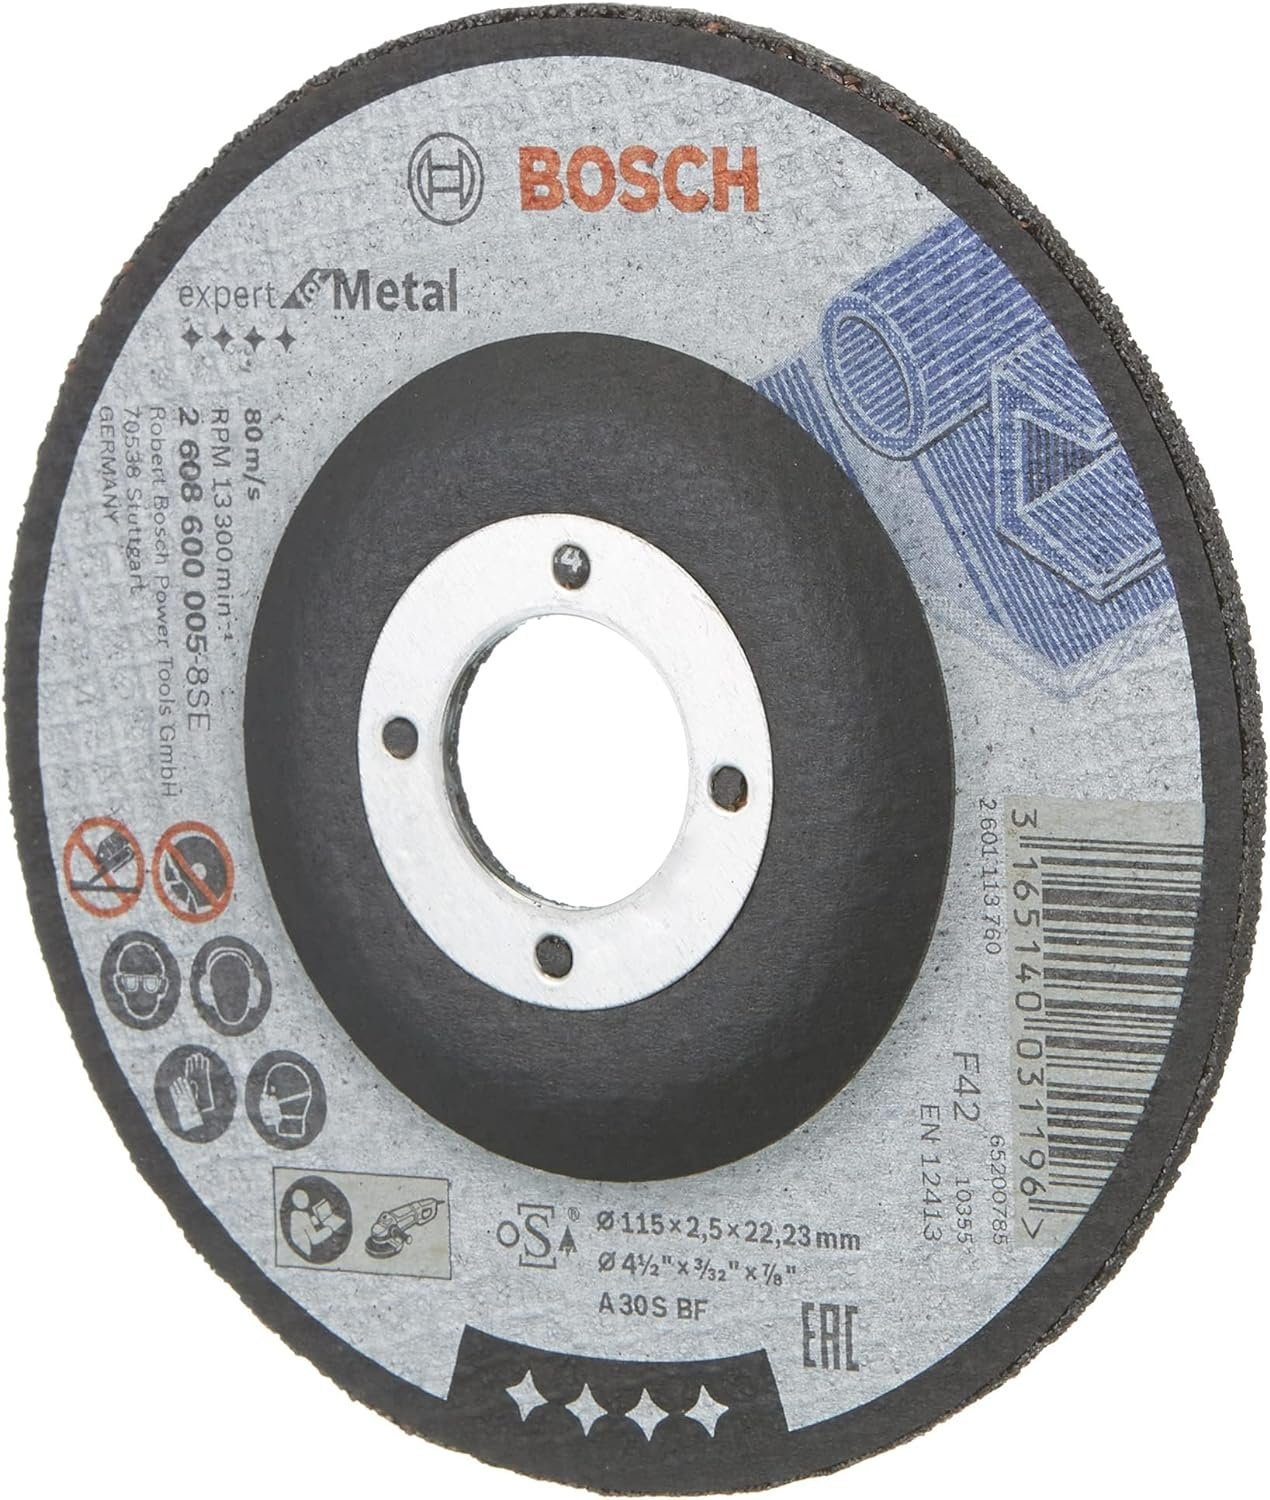 Trennscheibe BOSCH mm S gekröpft Expert BF, Ø A 30 2.5 Bohrfutter 125 Bosch mm, for